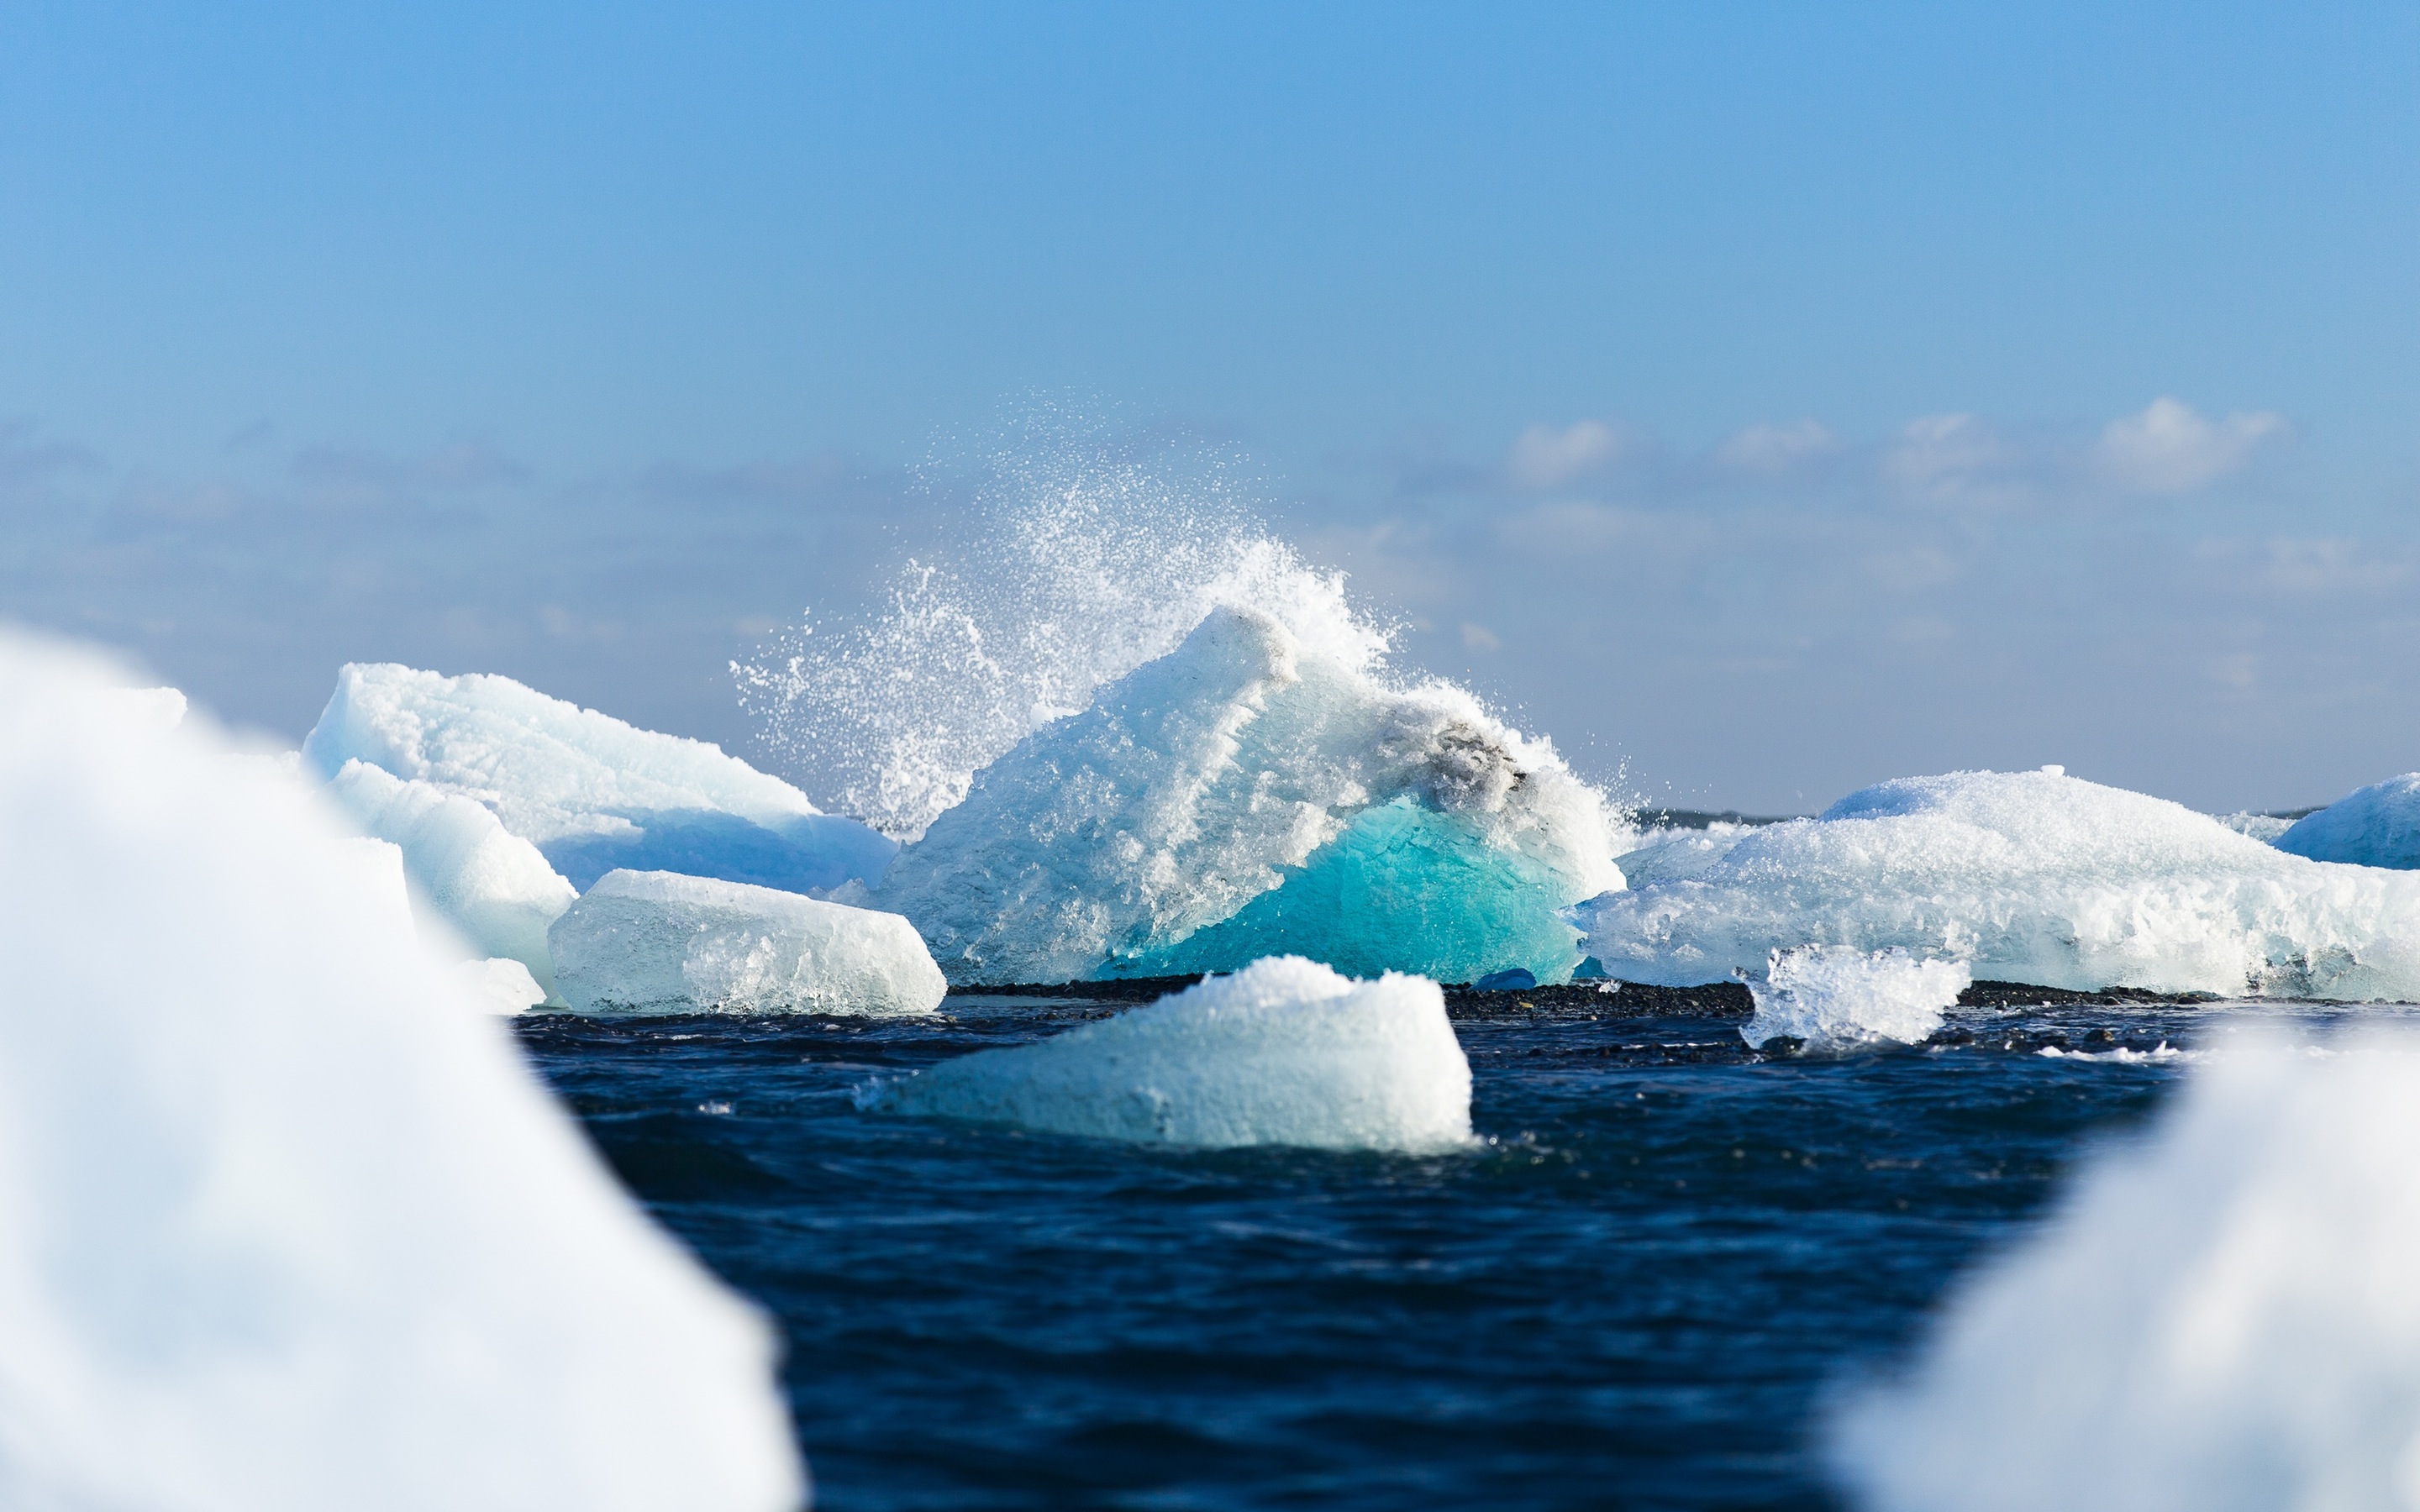 Iceberg, sky, water, wave, cold, blue, ocean, splash, antarctica ...